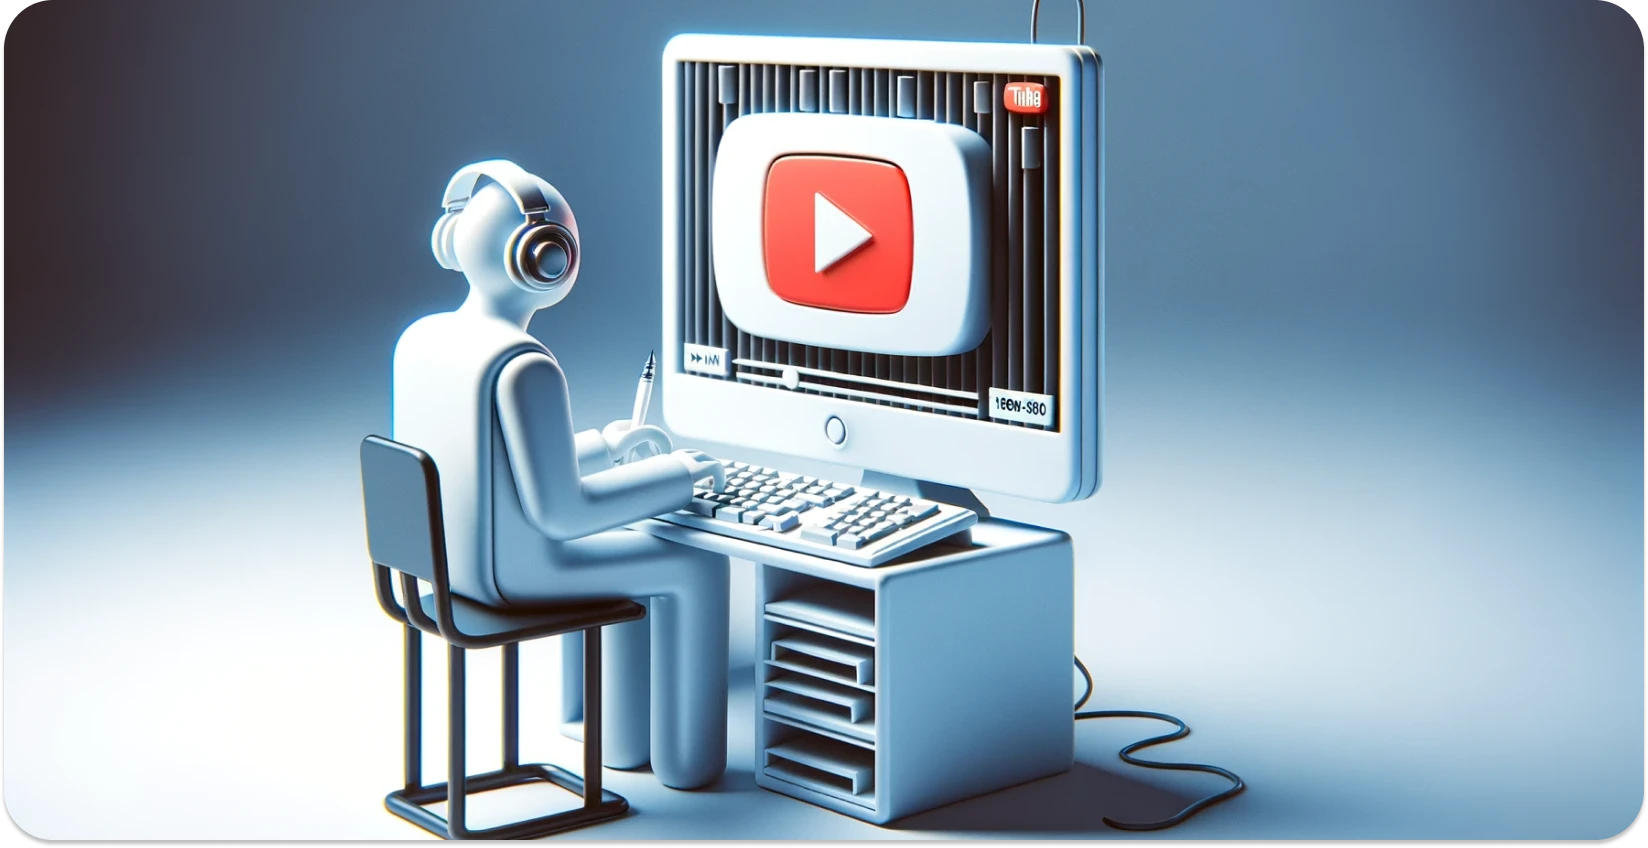 Ilustrație stilizată a unei persoane care utilizează un computer cu interfața YouTube, concentrându-se pe transcriere.